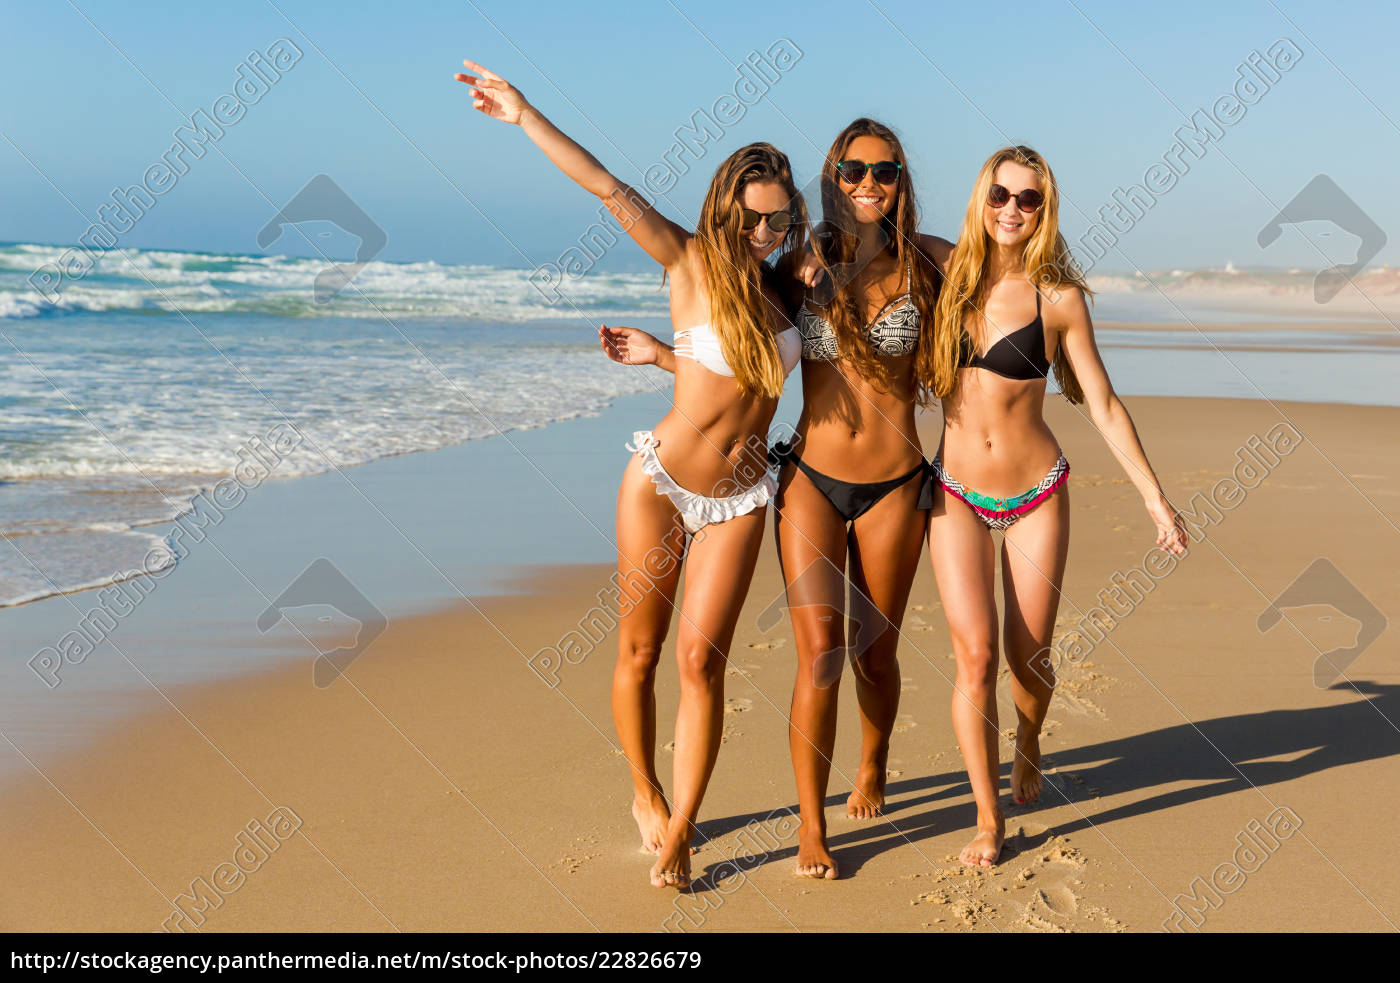 Meninas bonitas na praia - Stockphoto #22826679